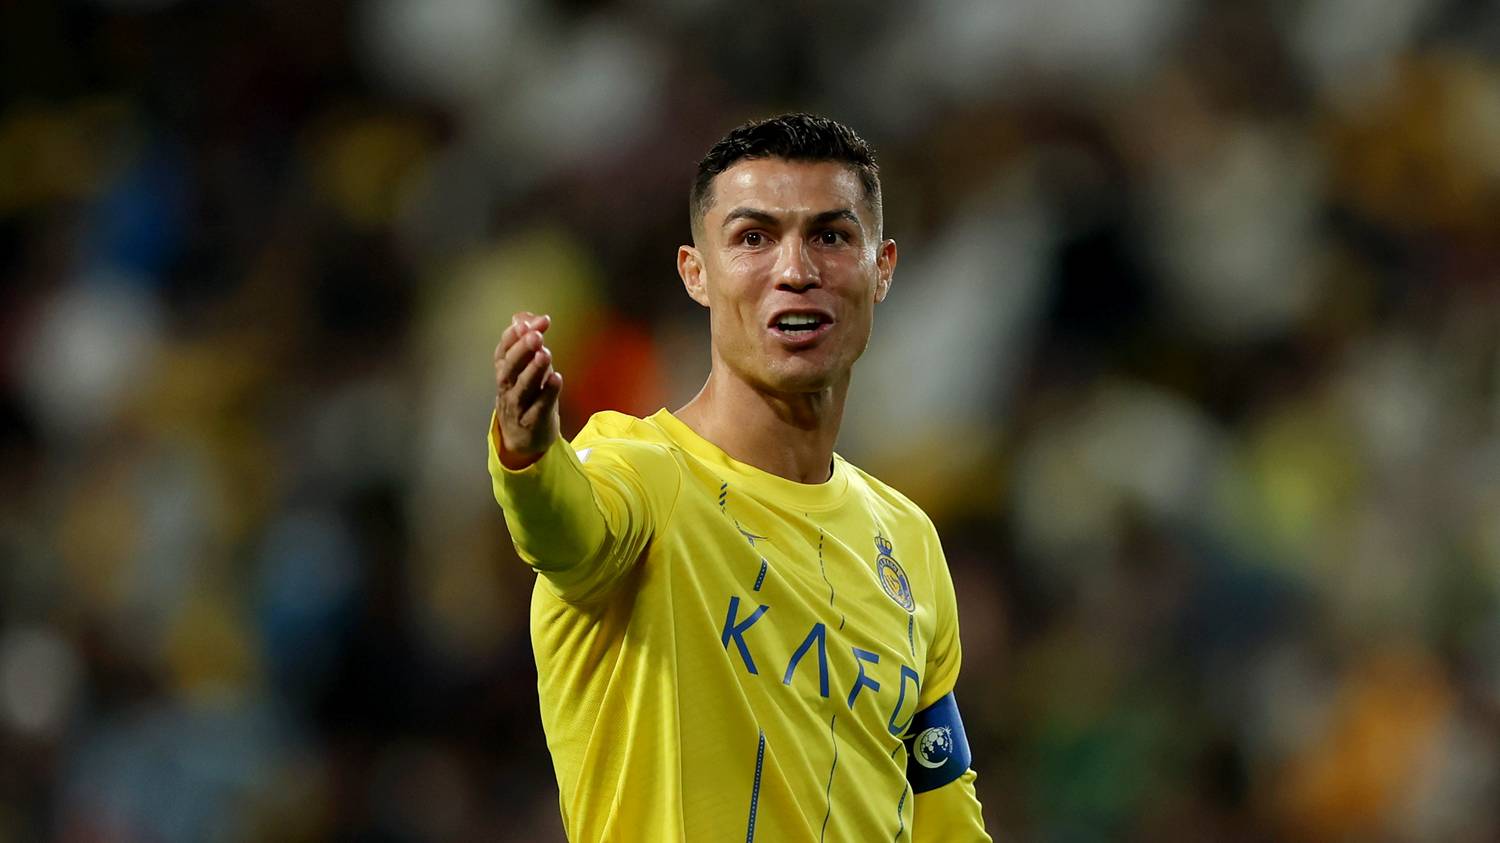 Cristiano Ronaldo eltiltást kapott, amiért obszcén módon reagált Messi nevére